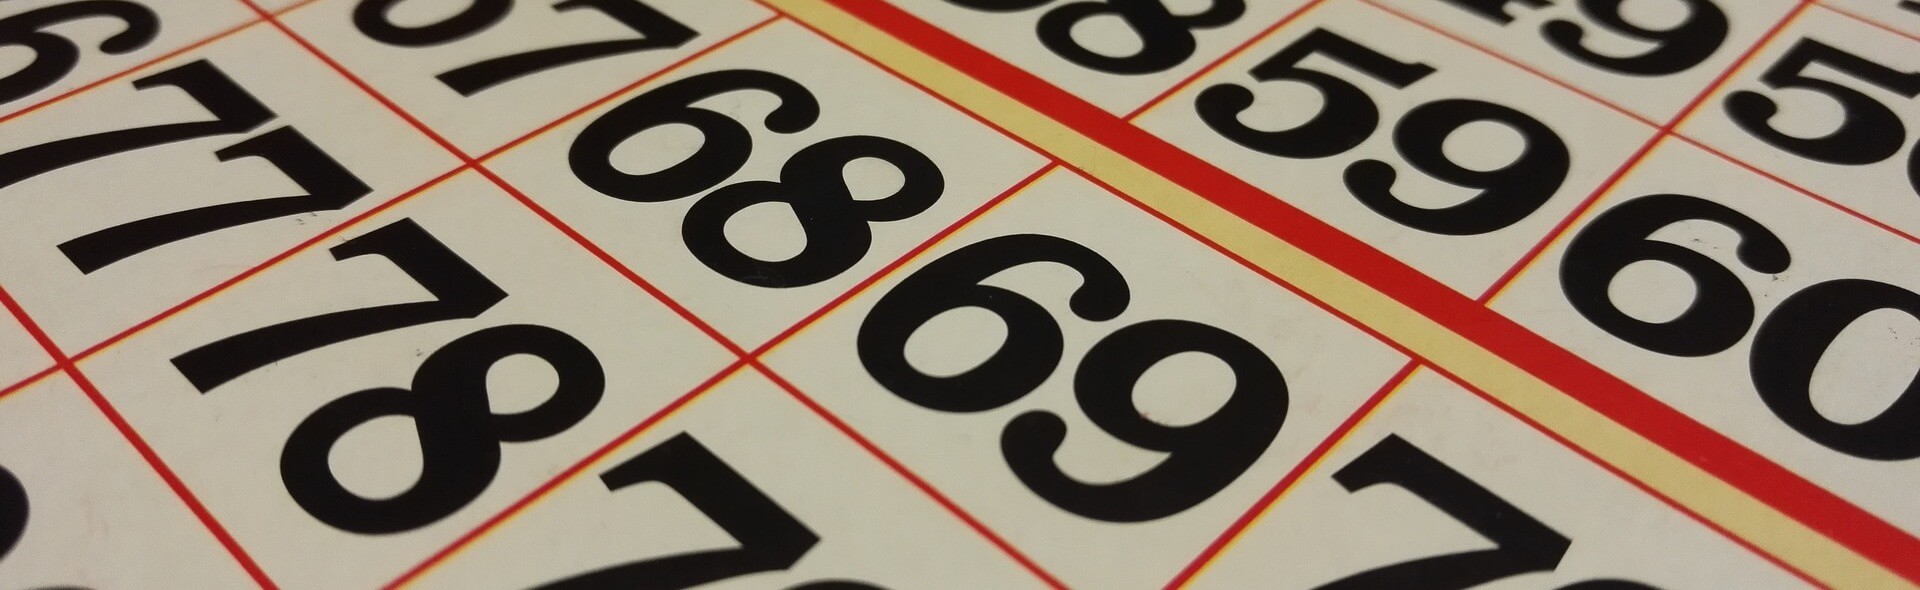 bingo-vel-met-cijfers-68-69-77-78